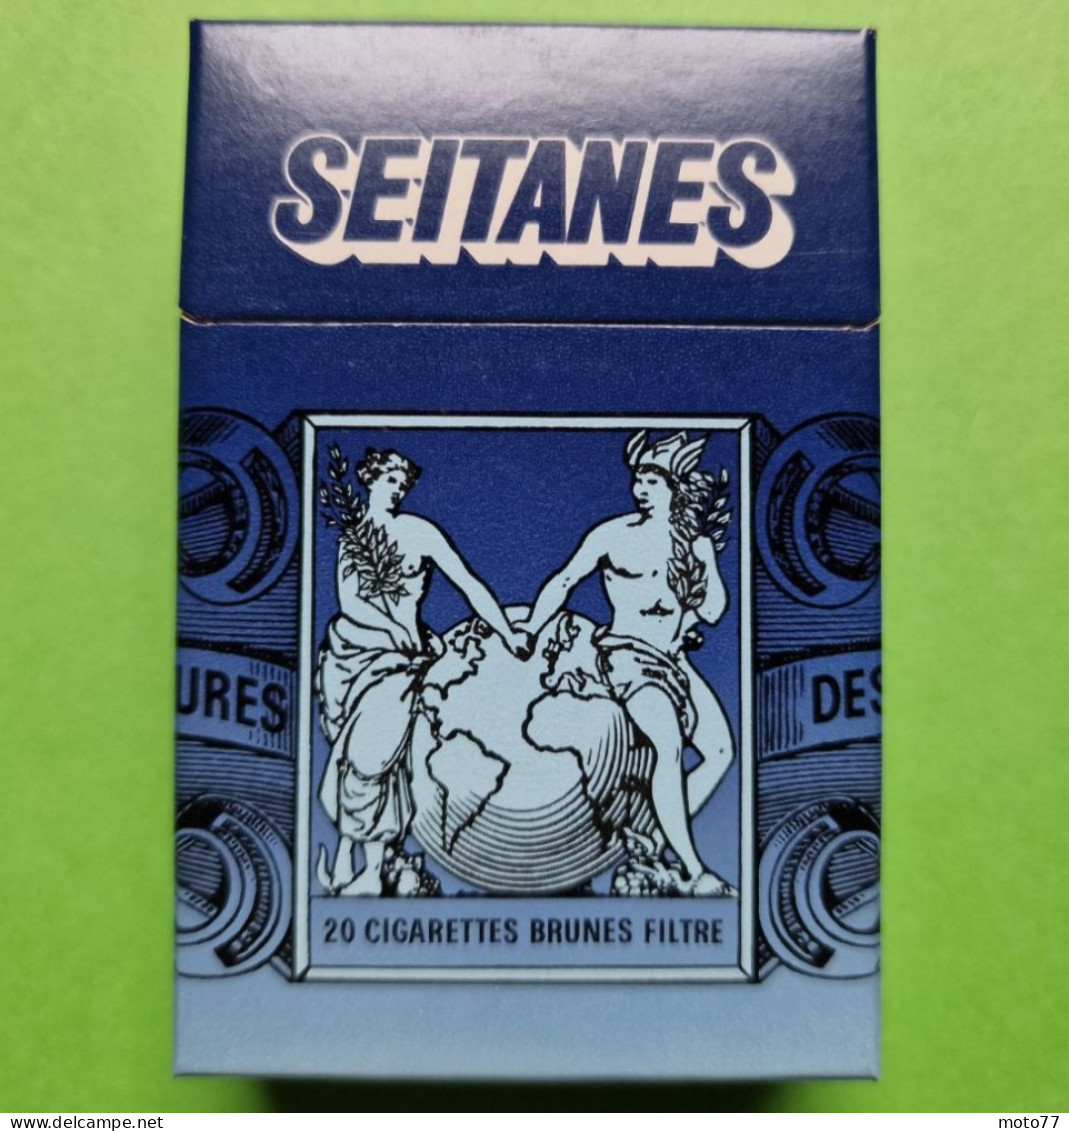 Ancien PAQUET De CIGARETTES Vide - SEITANES - Vers 1980 - Etuis à Cigarettes Vides